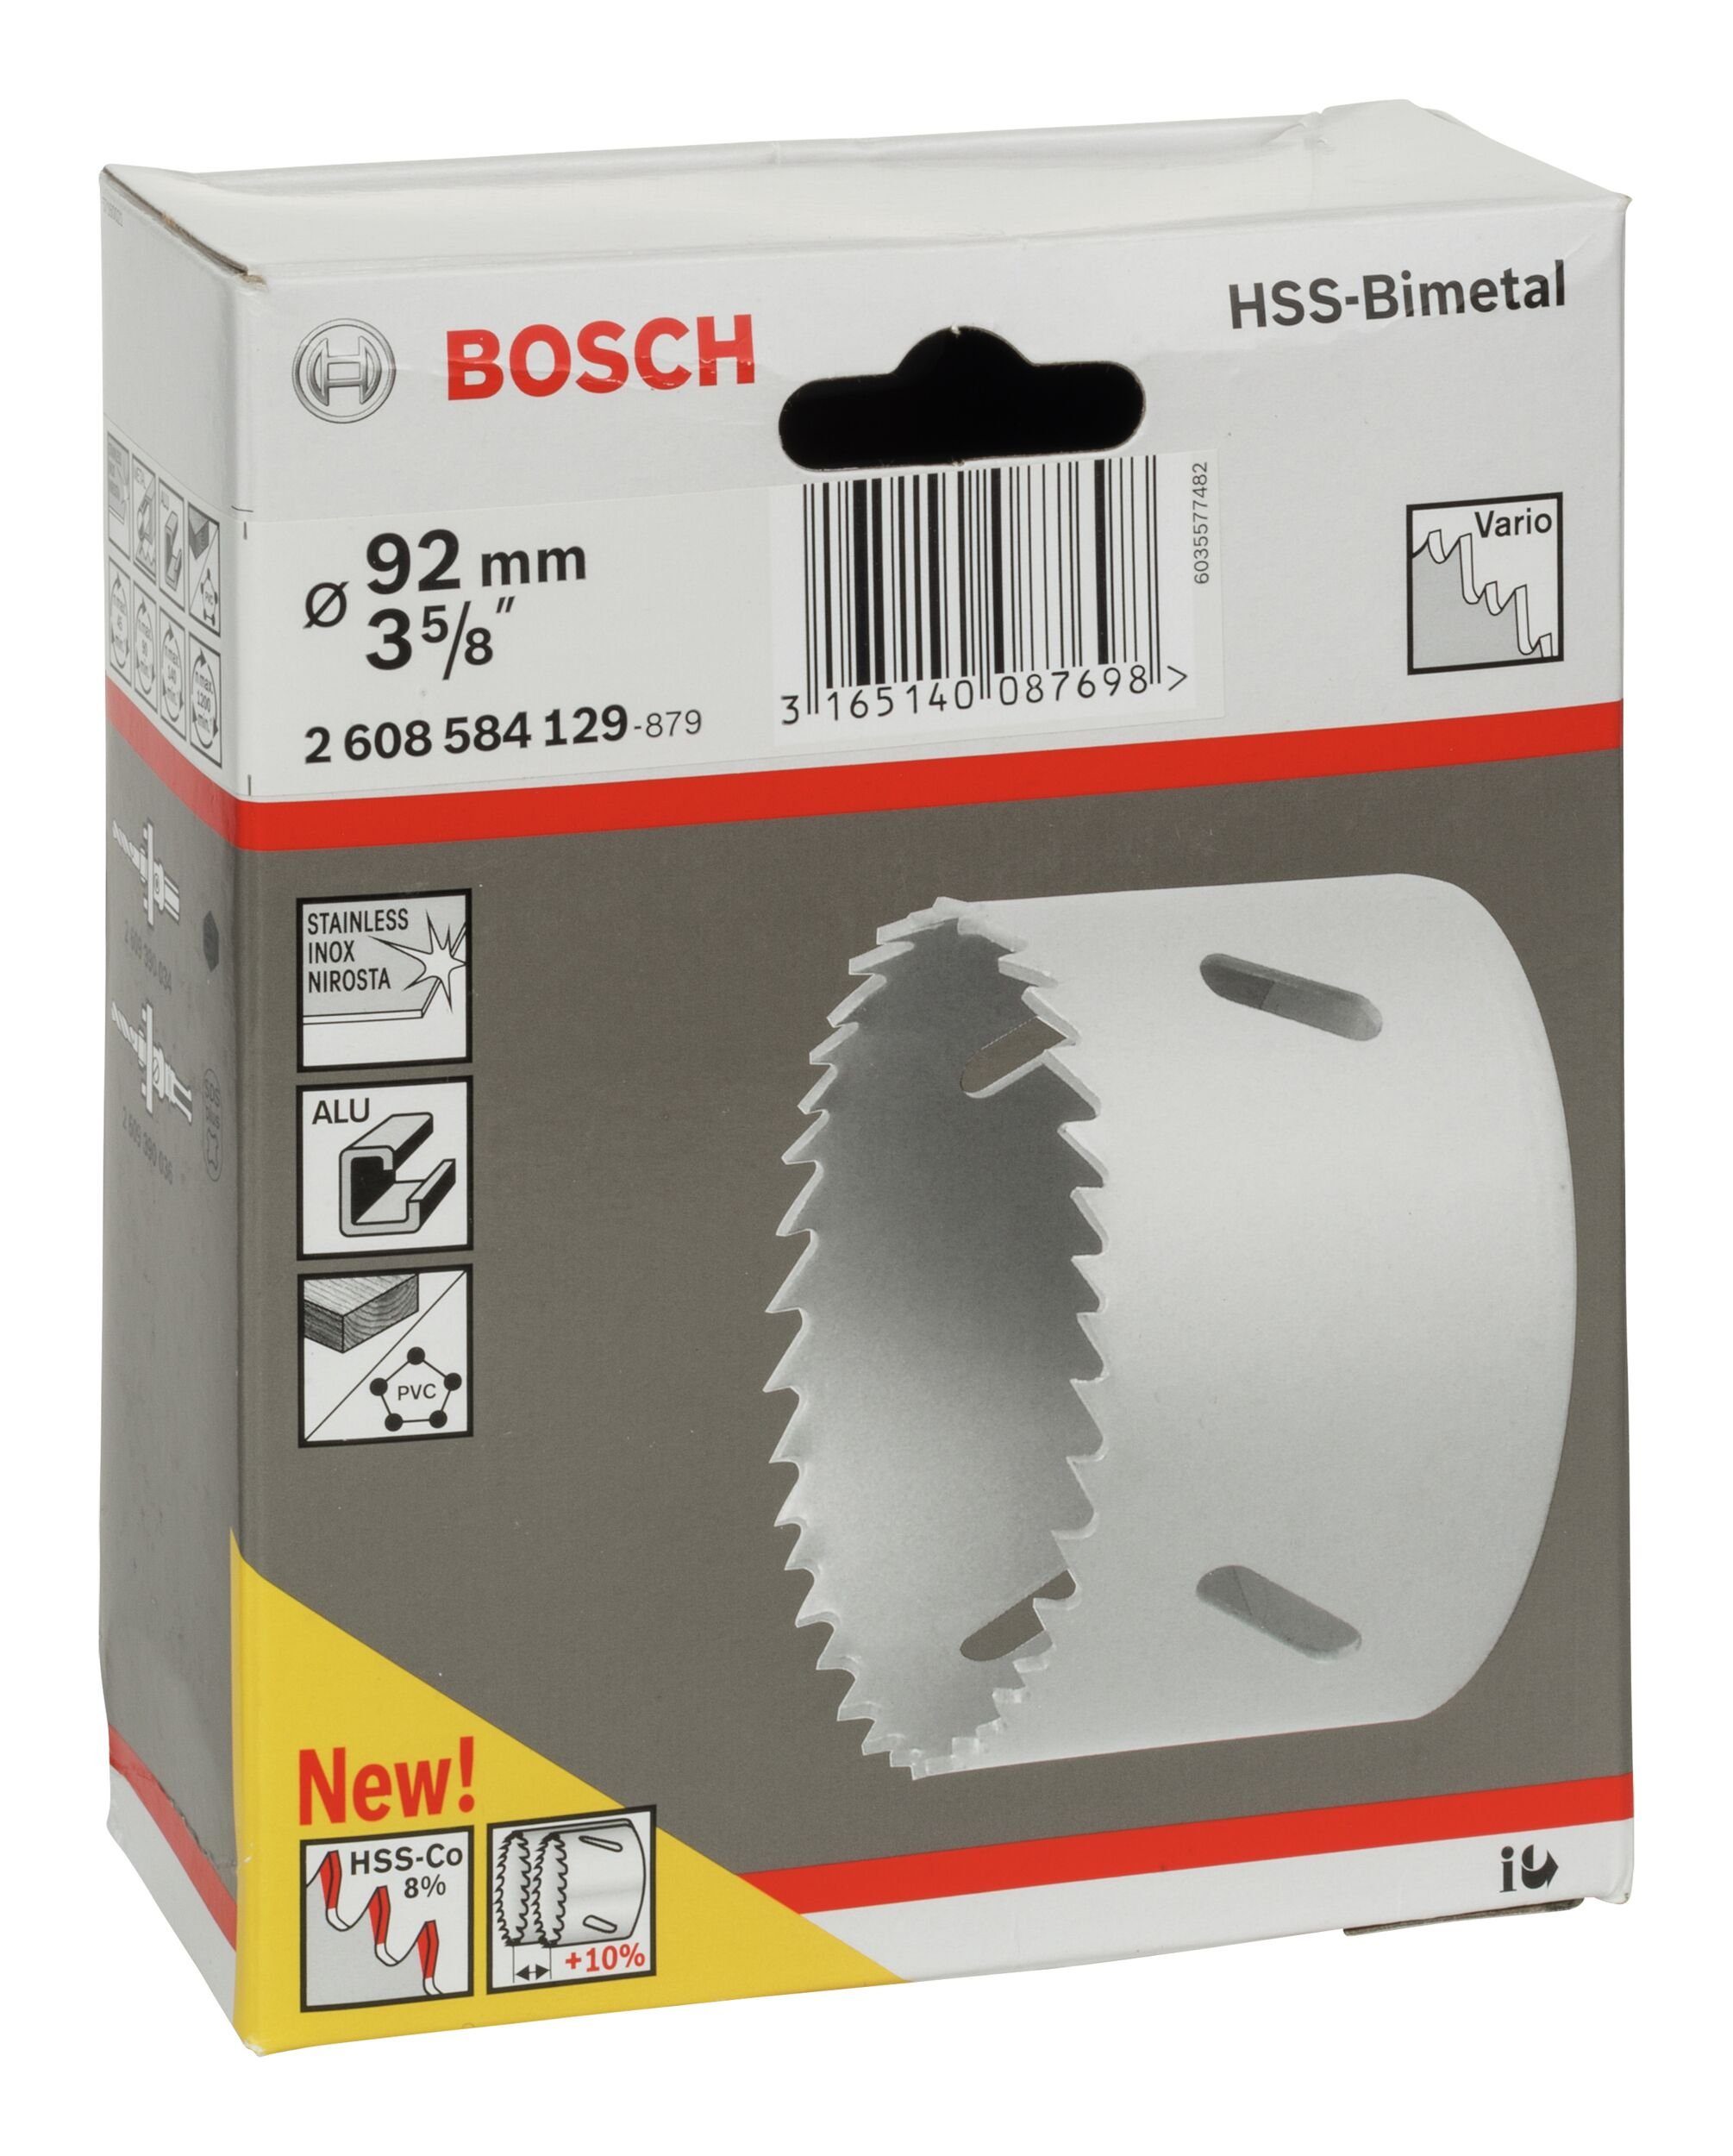 5/8" 92 mm, BOSCH Ø für HSS-Bimetall - 3 / Lochsäge, Standardadapter